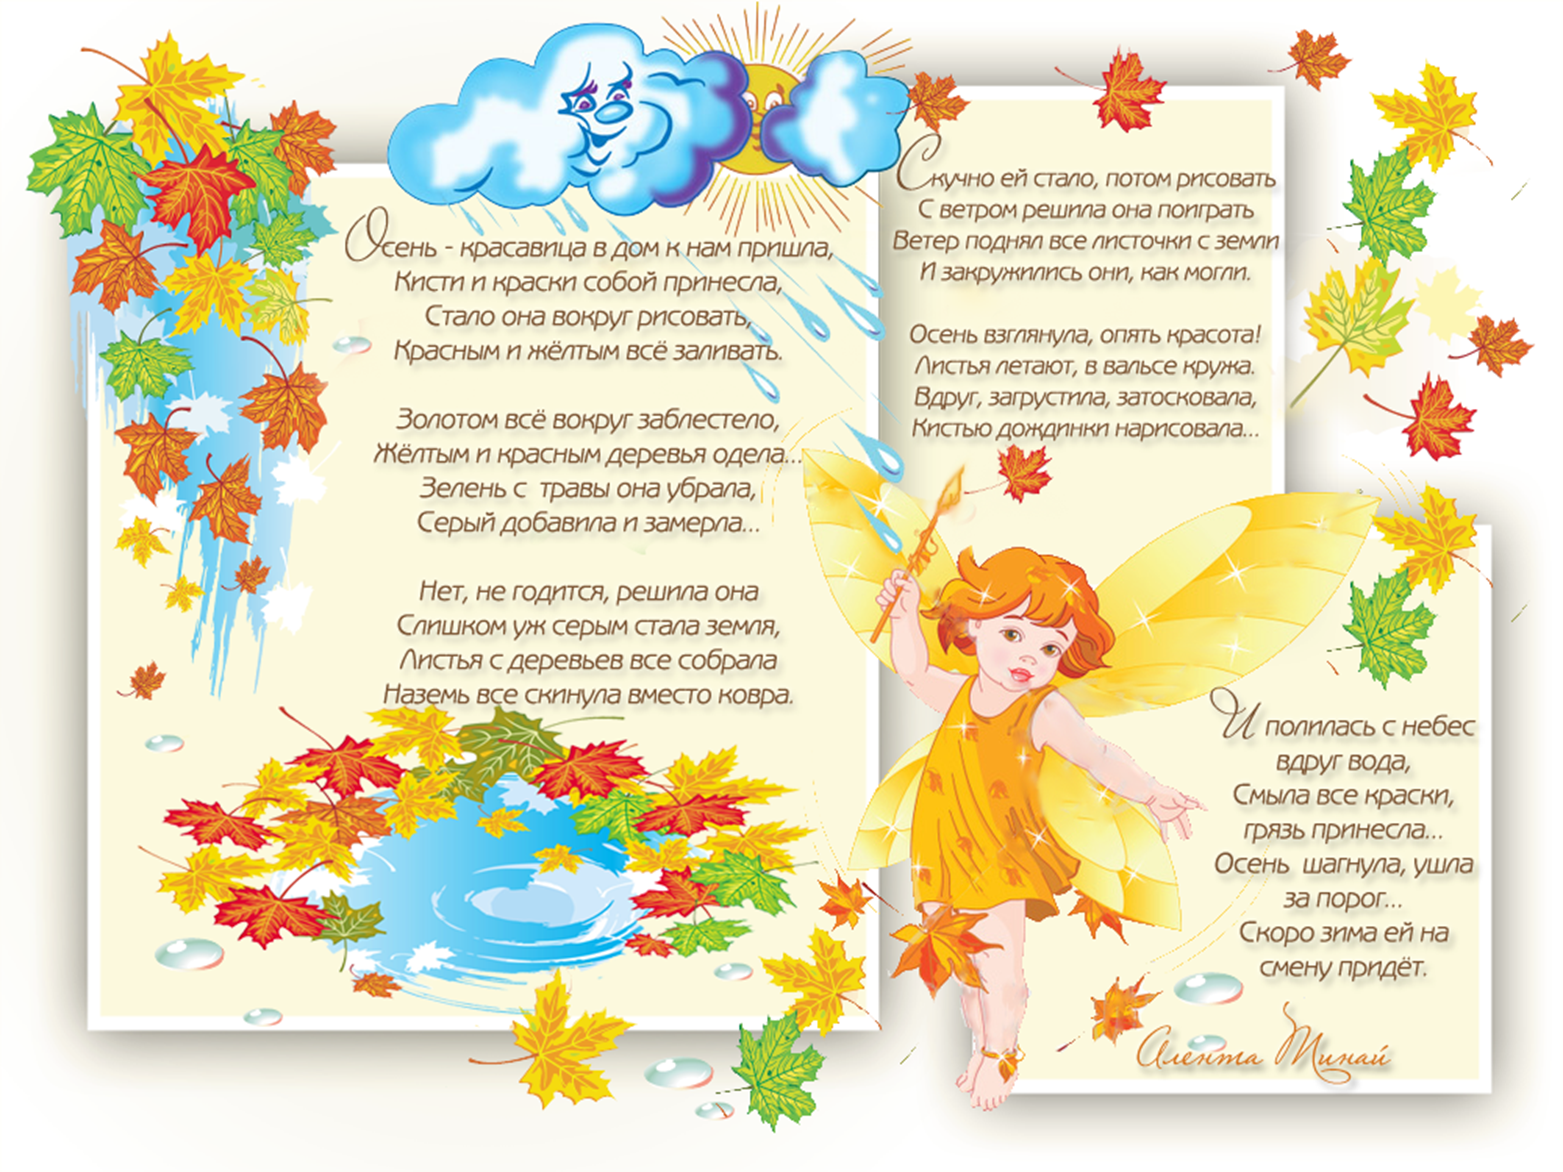 собрал красивые стихи про осень для детей Эта подборка стихов различных авторов, сможет отлично поднять настроение